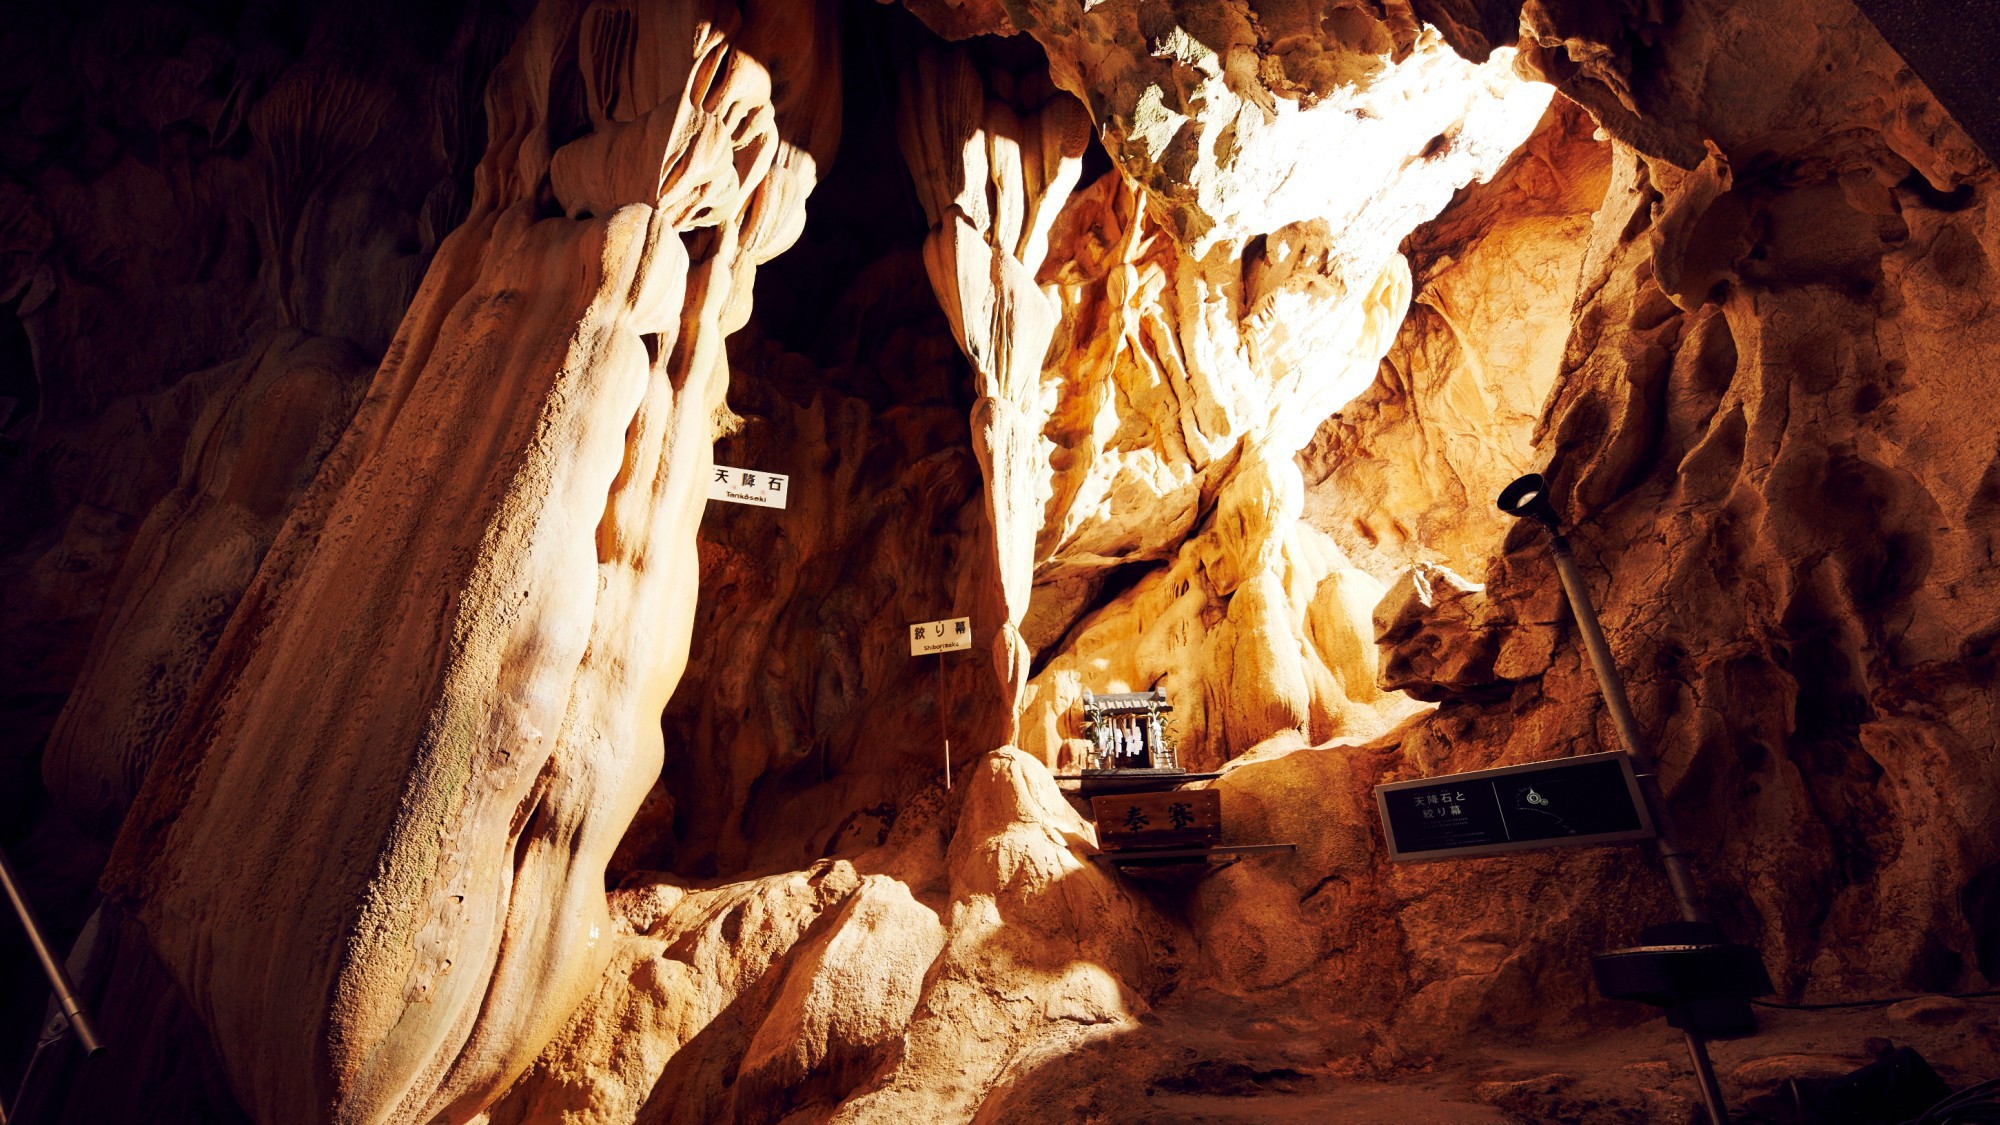 【龍河洞】ホテルよりお車約30分日本三大鍾乳洞のひとつ龍河洞ではアドベンチャー気分を味わえます。